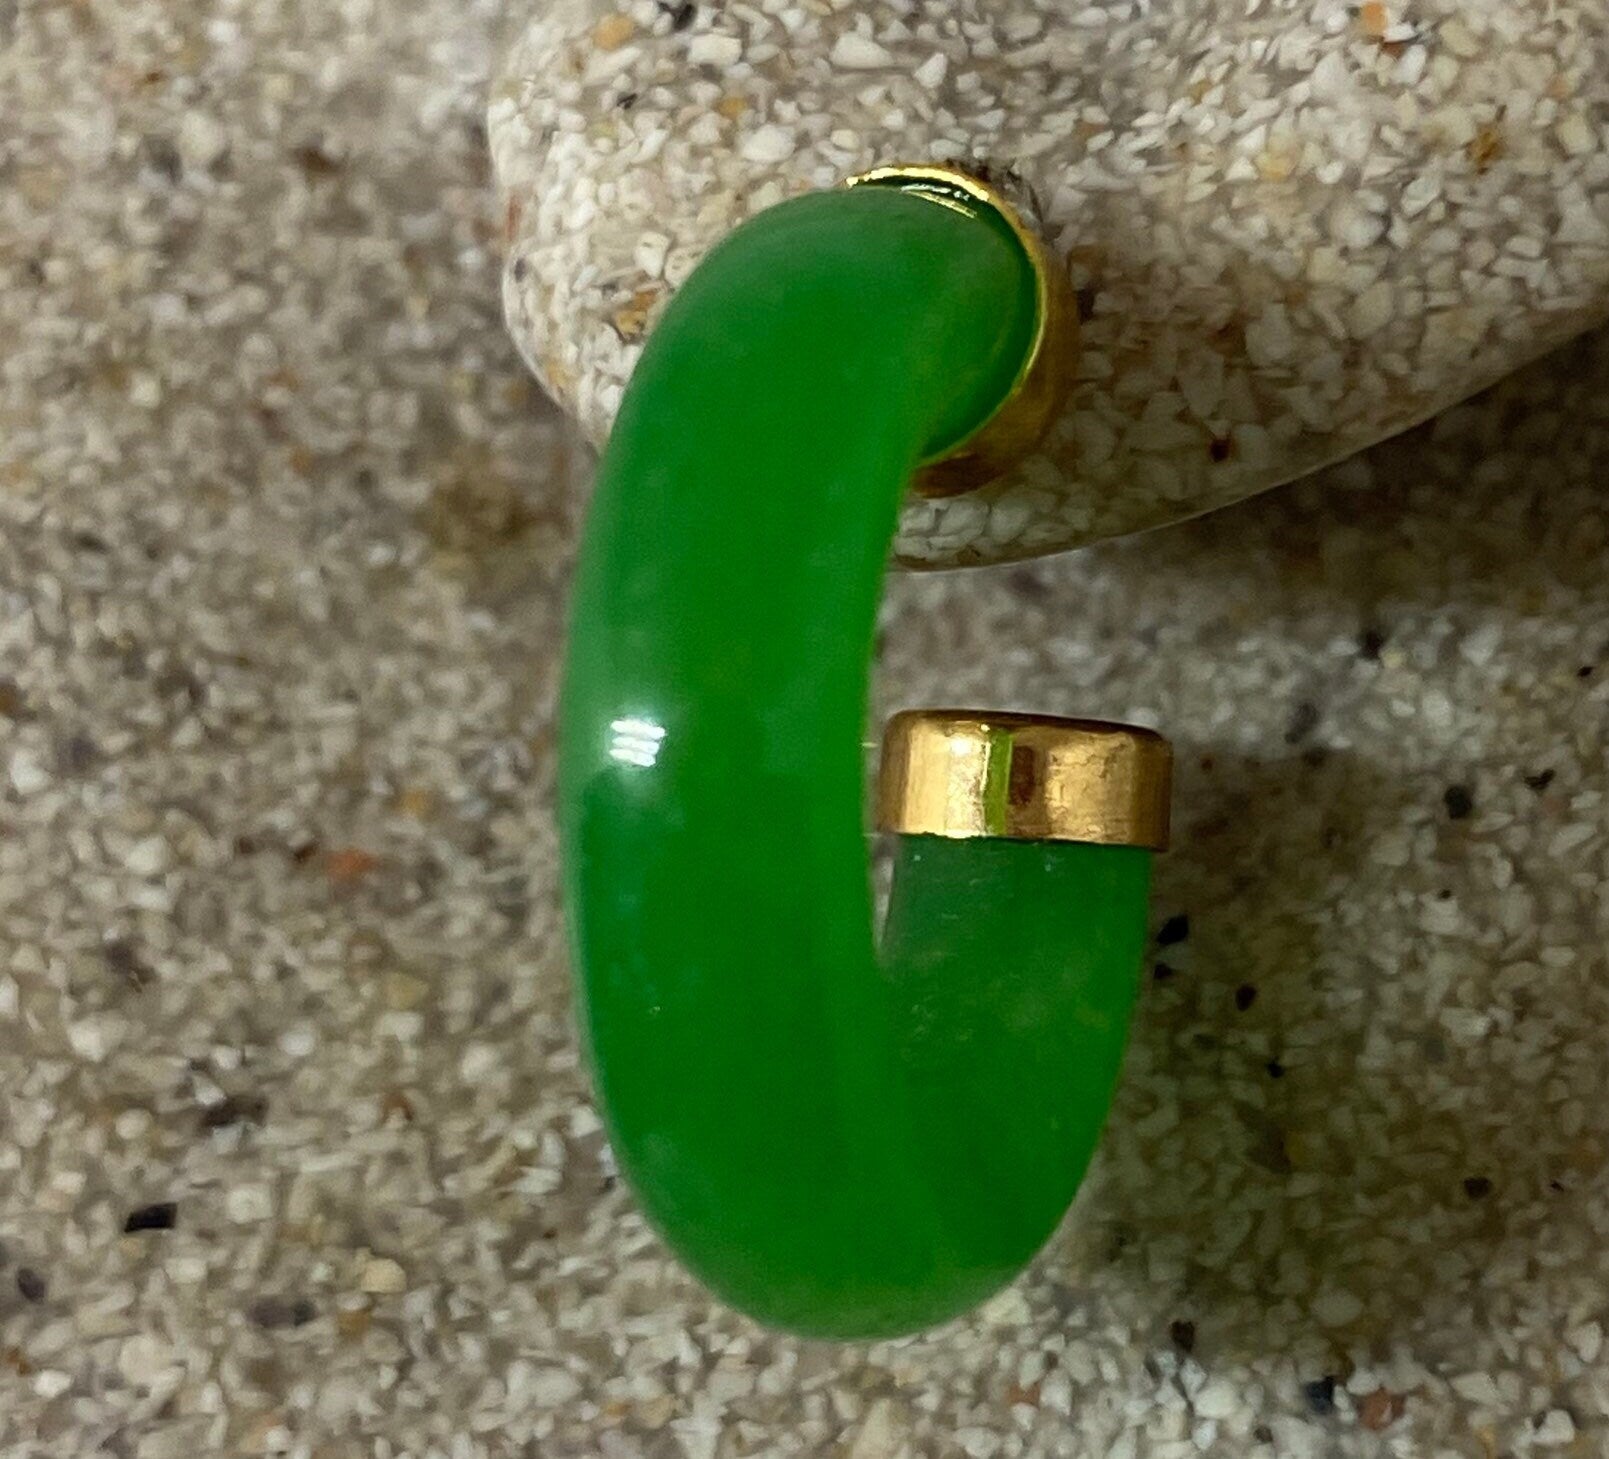 Vintage Fun Green Jade Hoop Earrings in Bronze